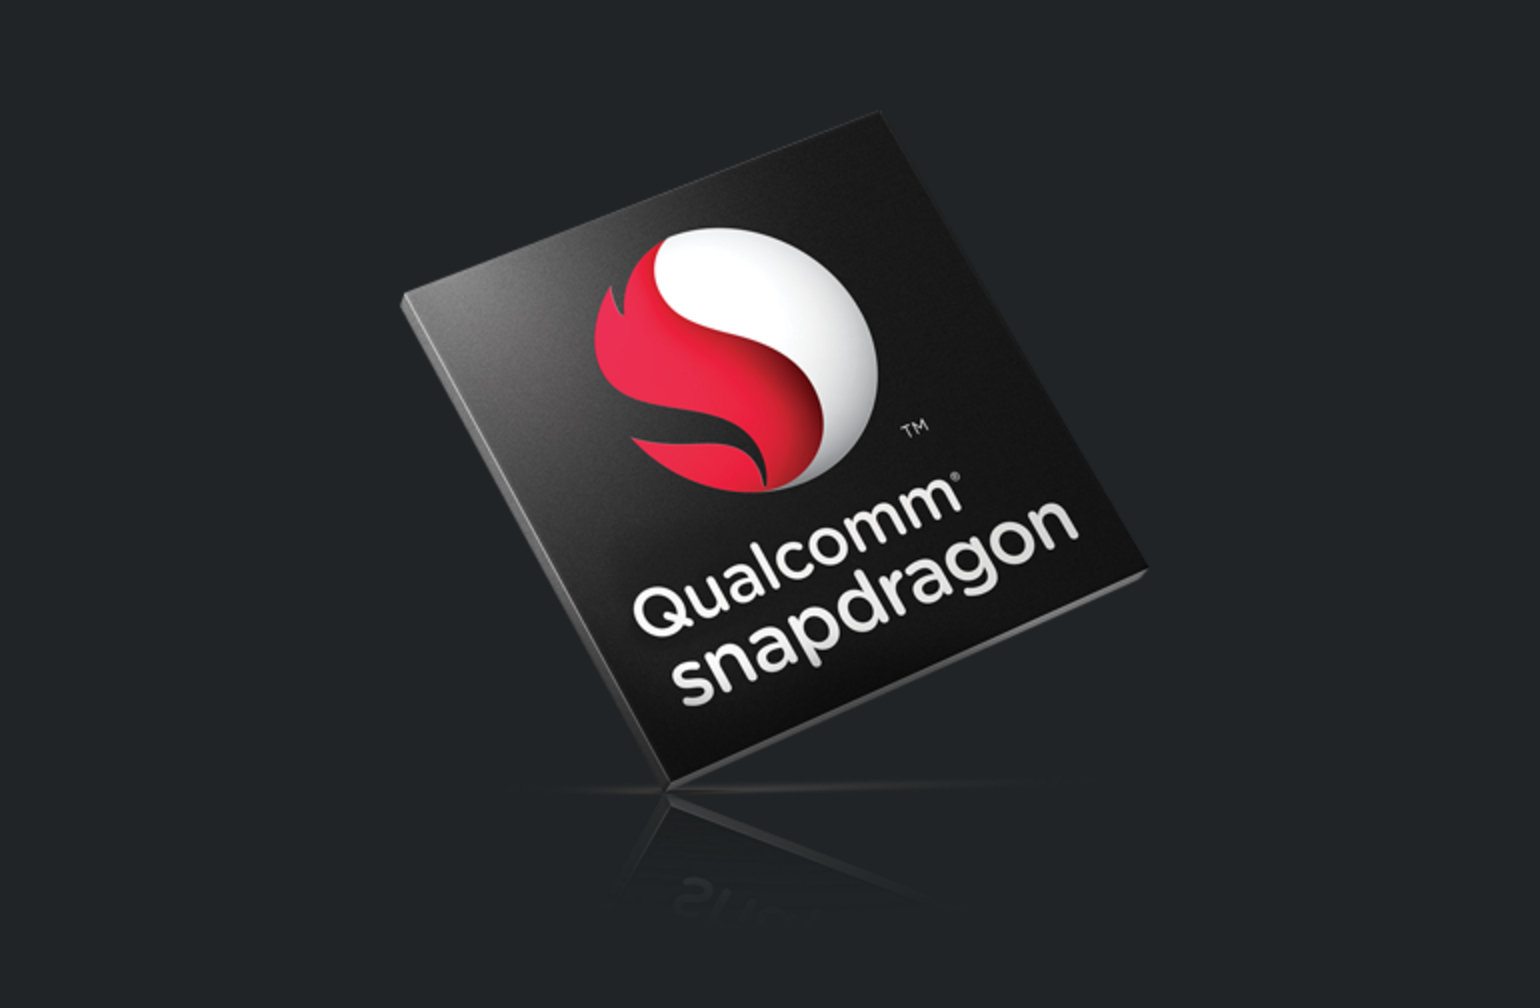 Sự khác biệt giữa Qualcomm Snapdragon 630 vs Snapdragon 625